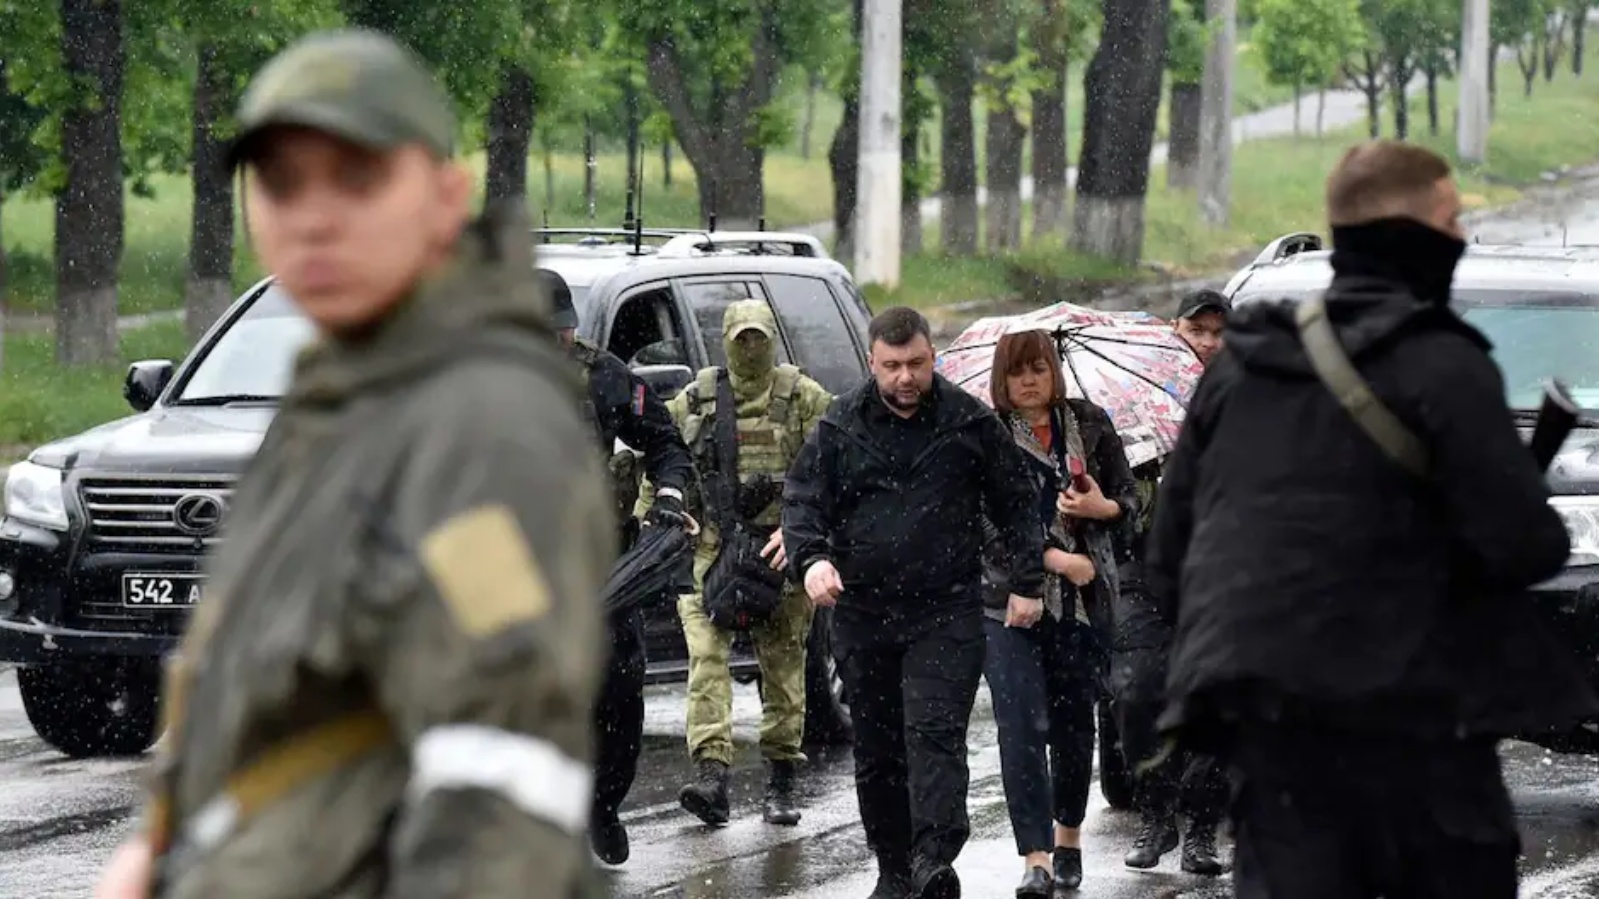 السلطات الانفصالية الموالية لموسكو في منطقة دونيتسك بشرق أوكرانيا الجمعة وفاة البريطاني بول يوري المعتقل لديها في 10 يوليو.